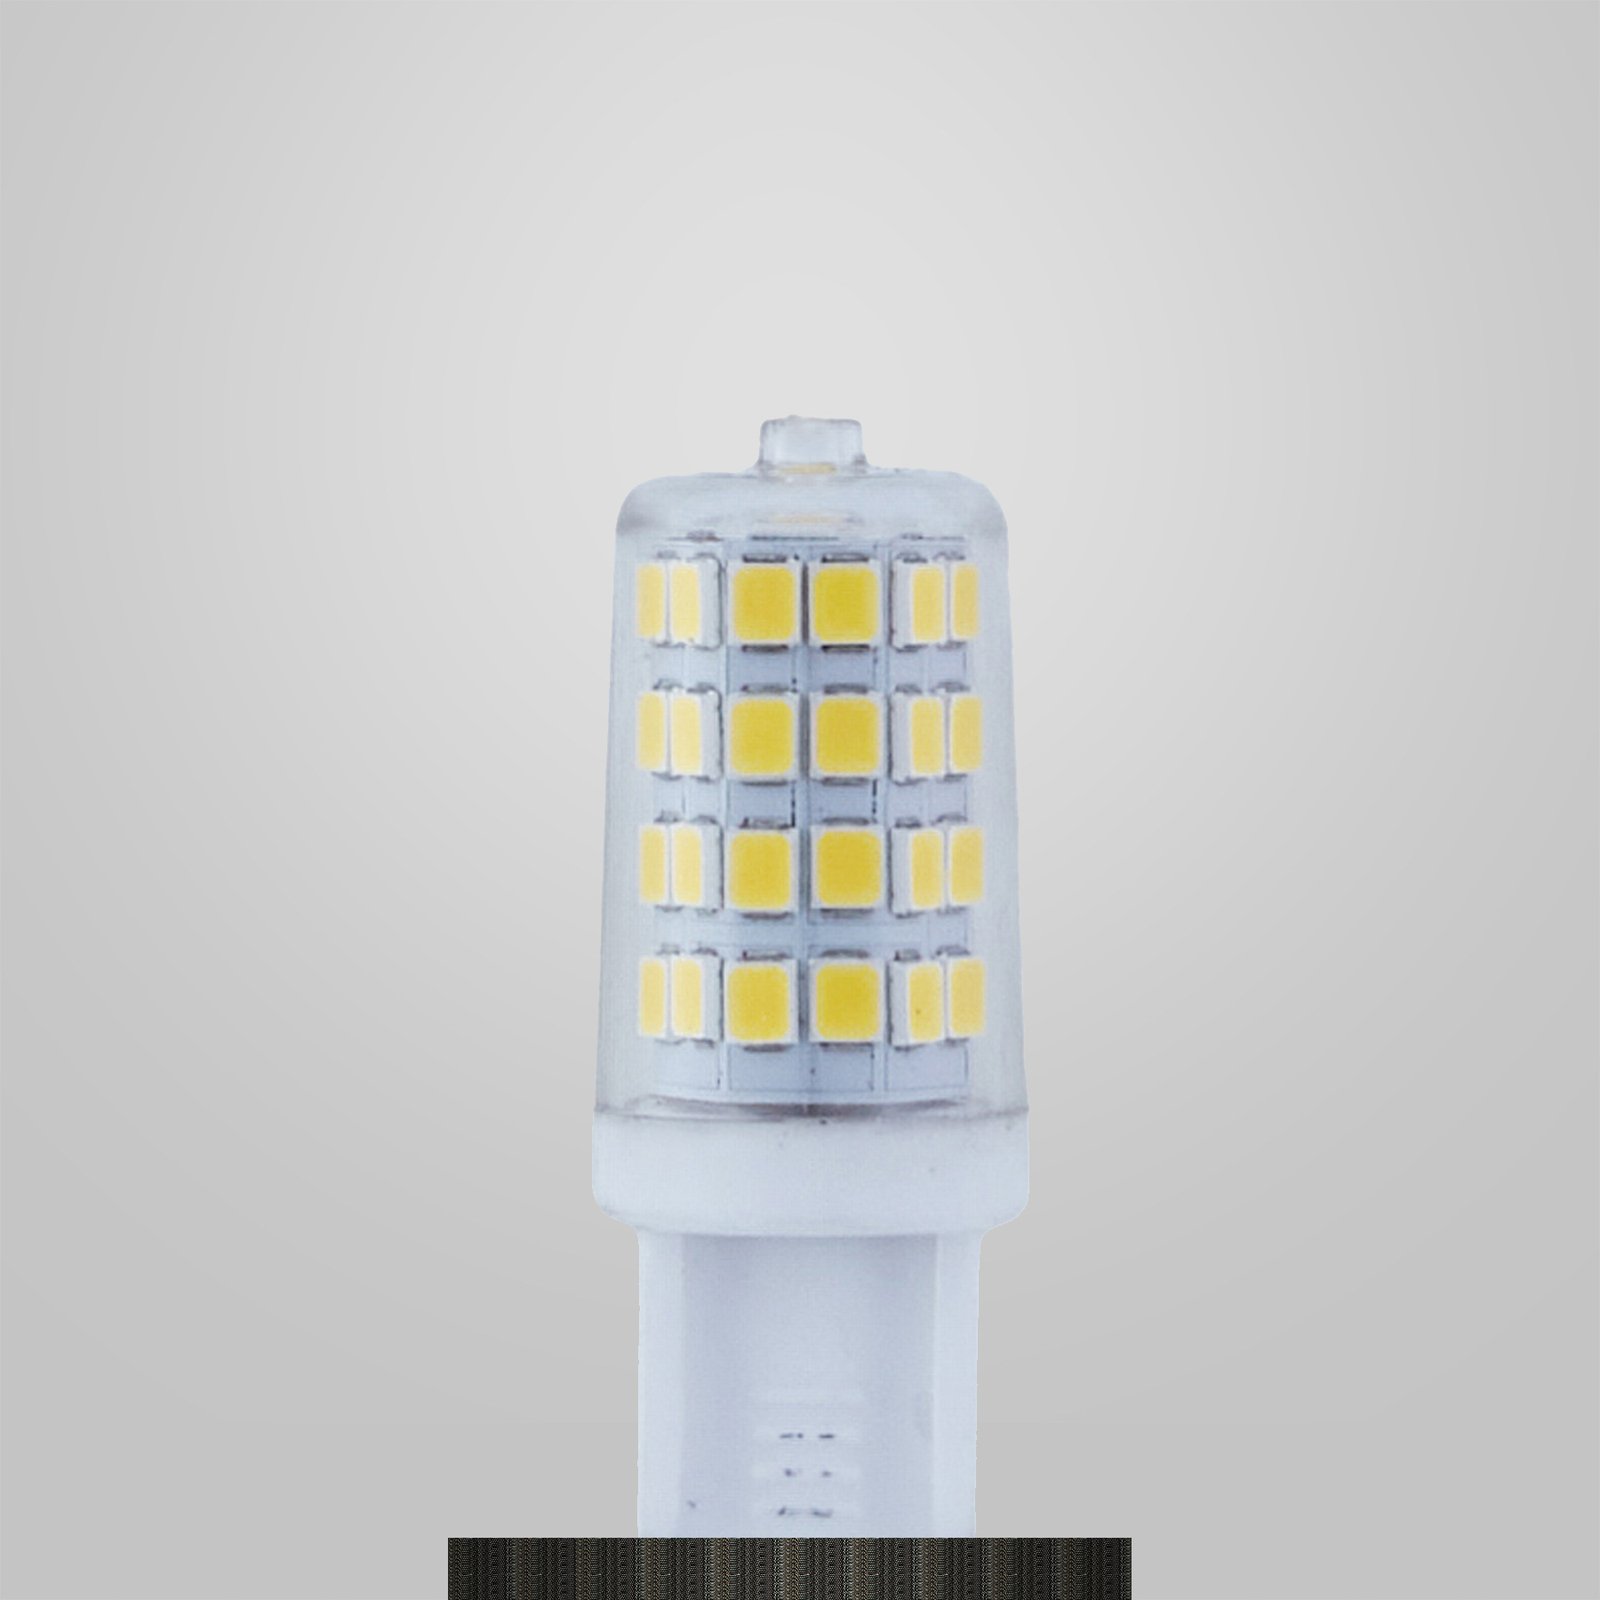 Lindby LED-stiftsokkelpære, G9, 3 W, klar, 4.000 K, 350 lm